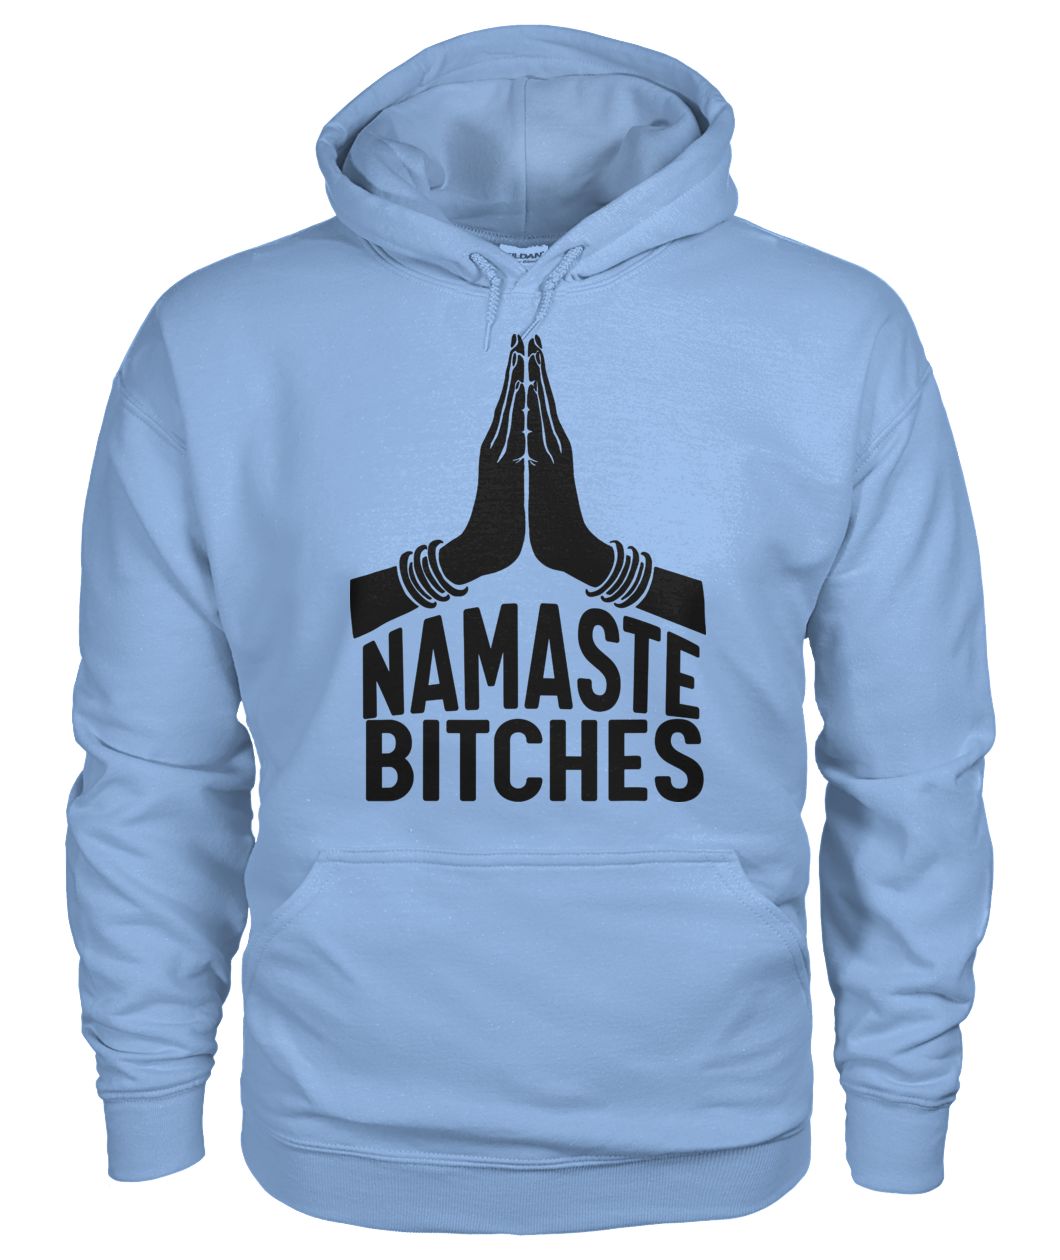 Namaste bitches yoga gildan hoodie